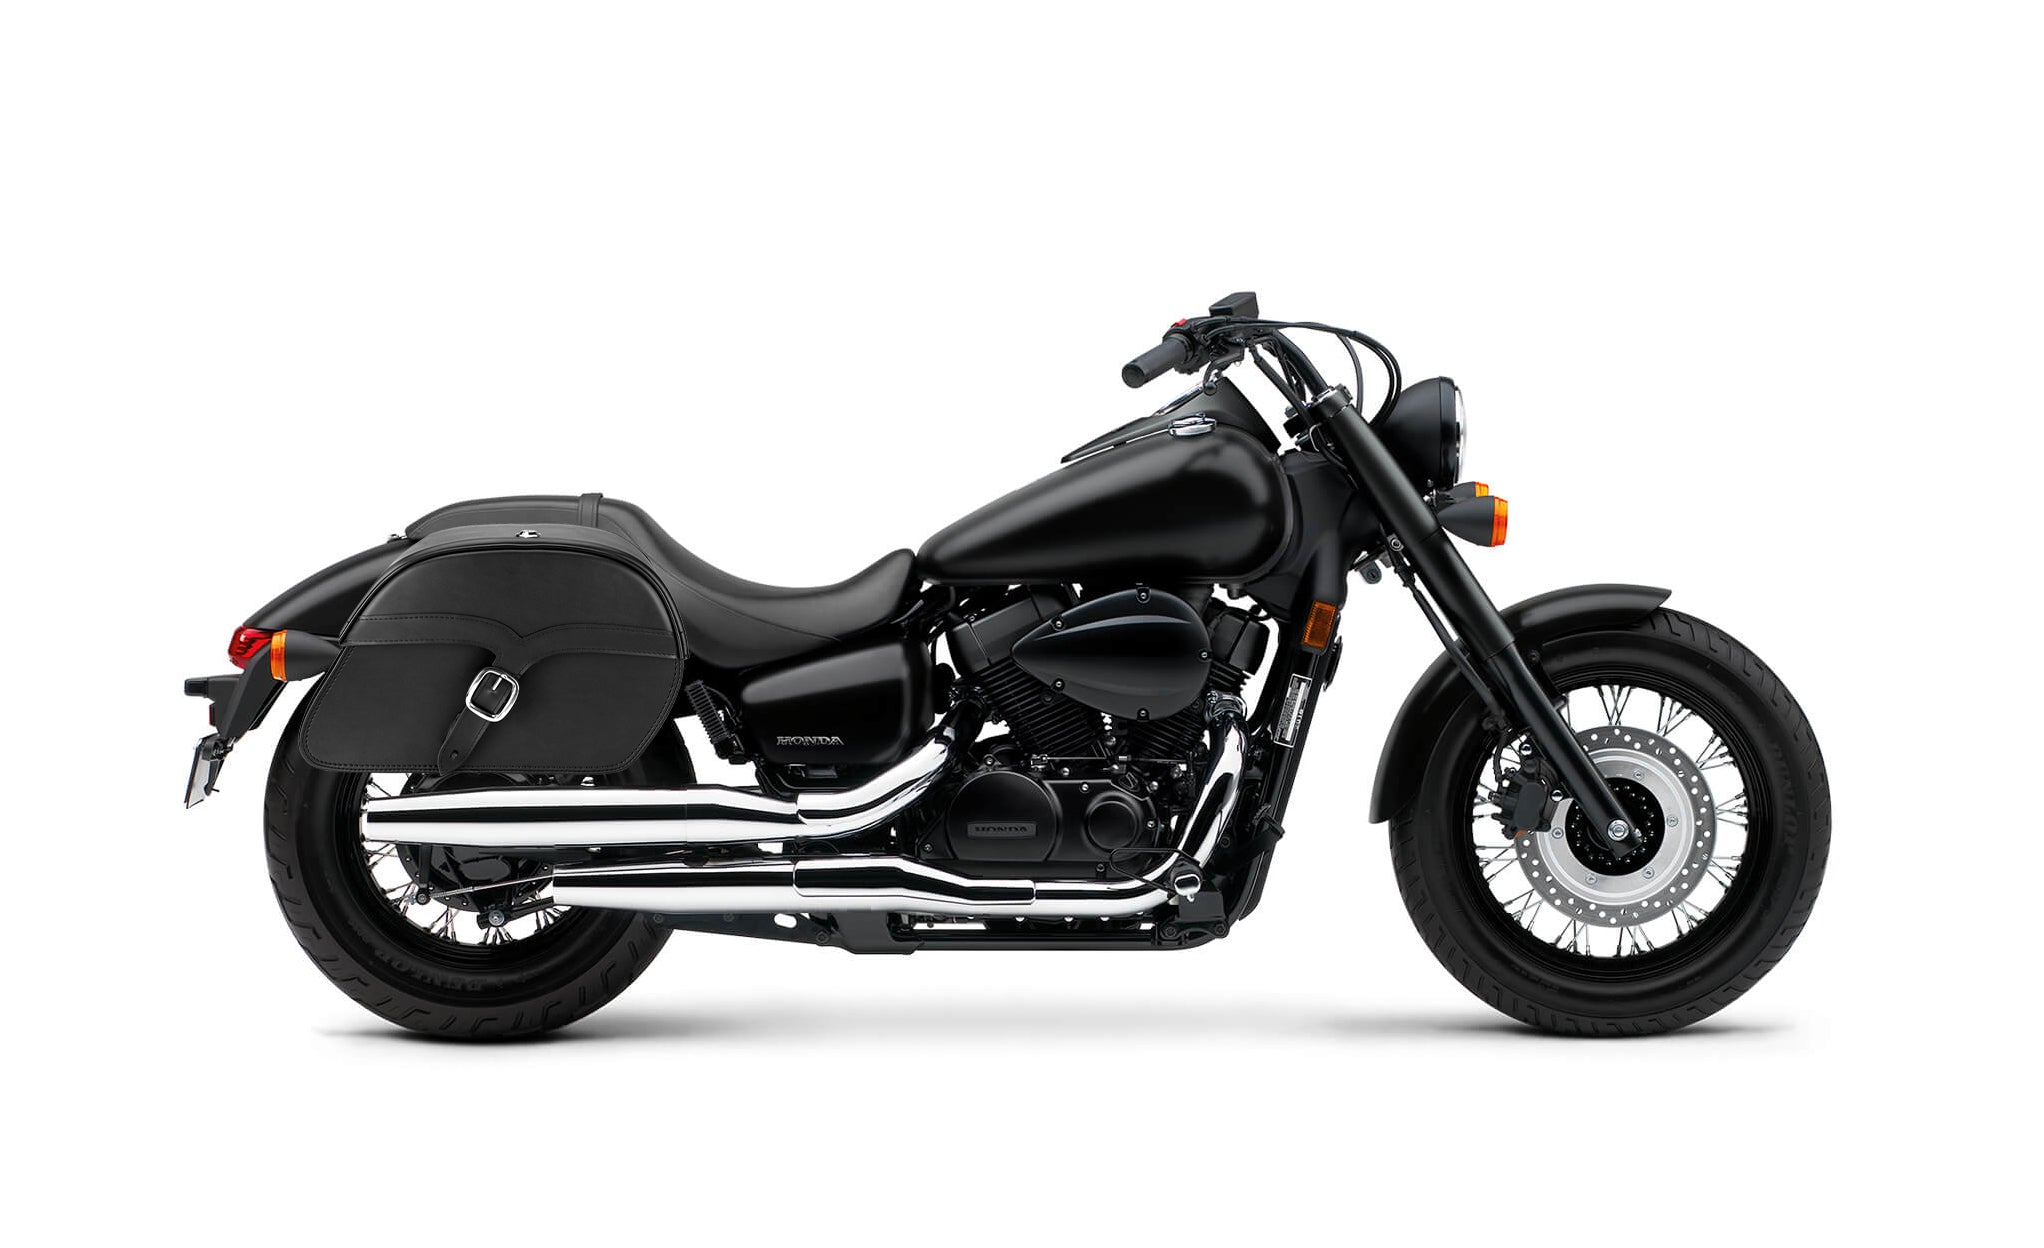 Viking Vintage Medium Honda Shadow 750 Phantom Leather Motorcycle Saddlebags on Bike Photo @expand